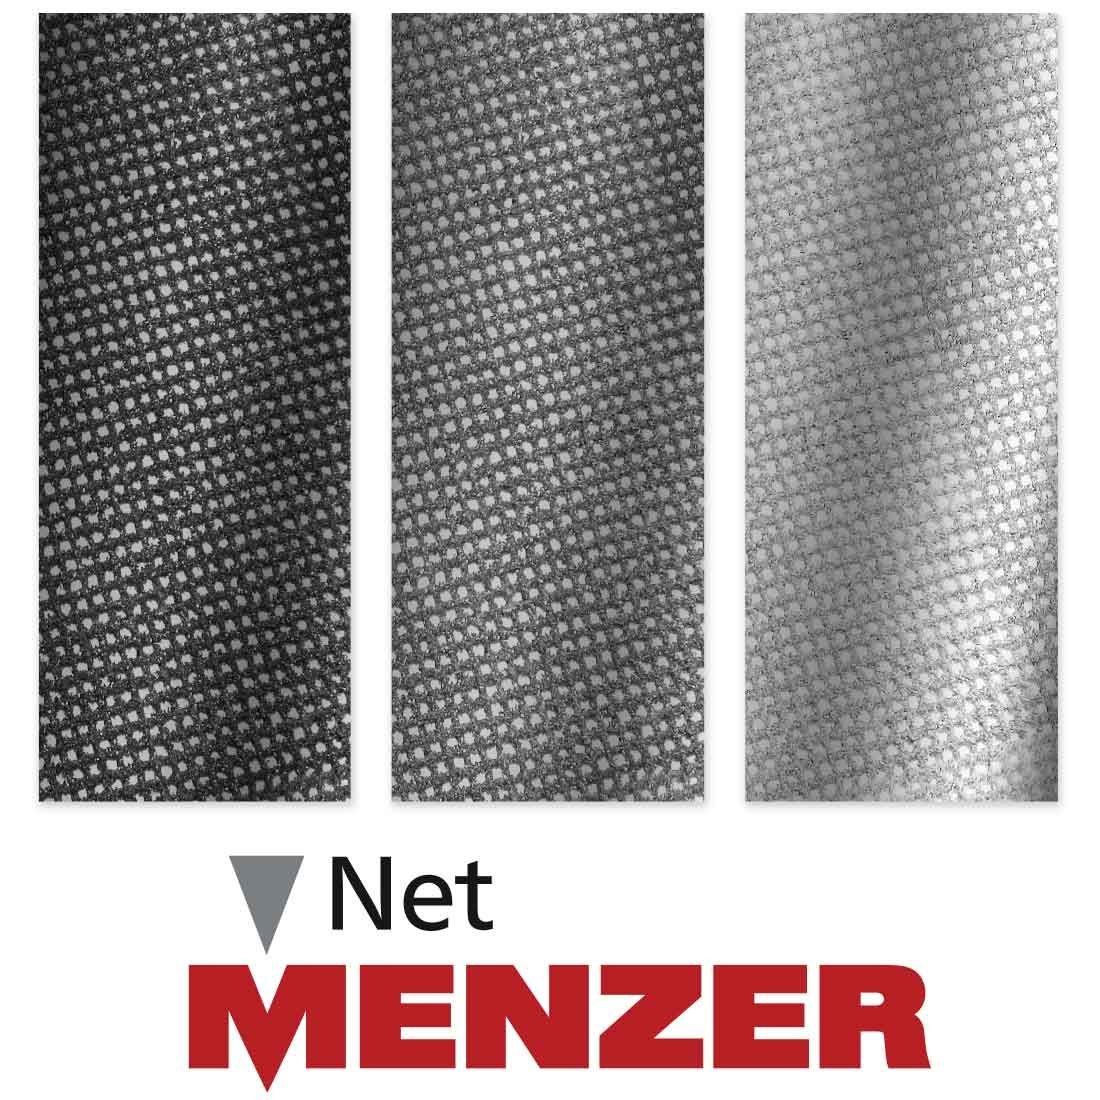 MENZER Schleifdreieck 290 x Siliciumcarbid, 10 K120 250 mm Trockenbauschleifer, für Klett-Schleifgitter Stk